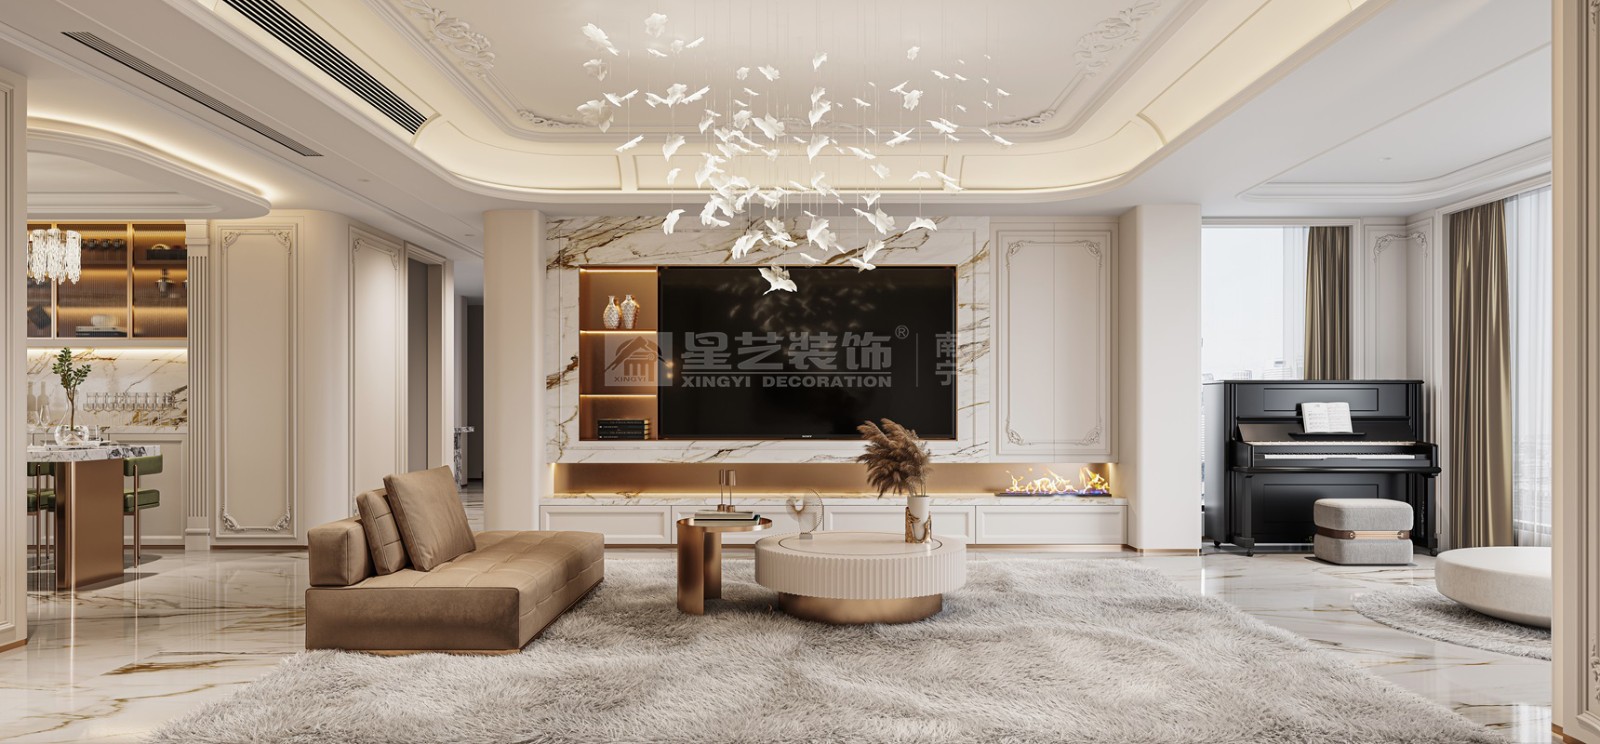 DK国际200平轻法式风格客厅装修效果图